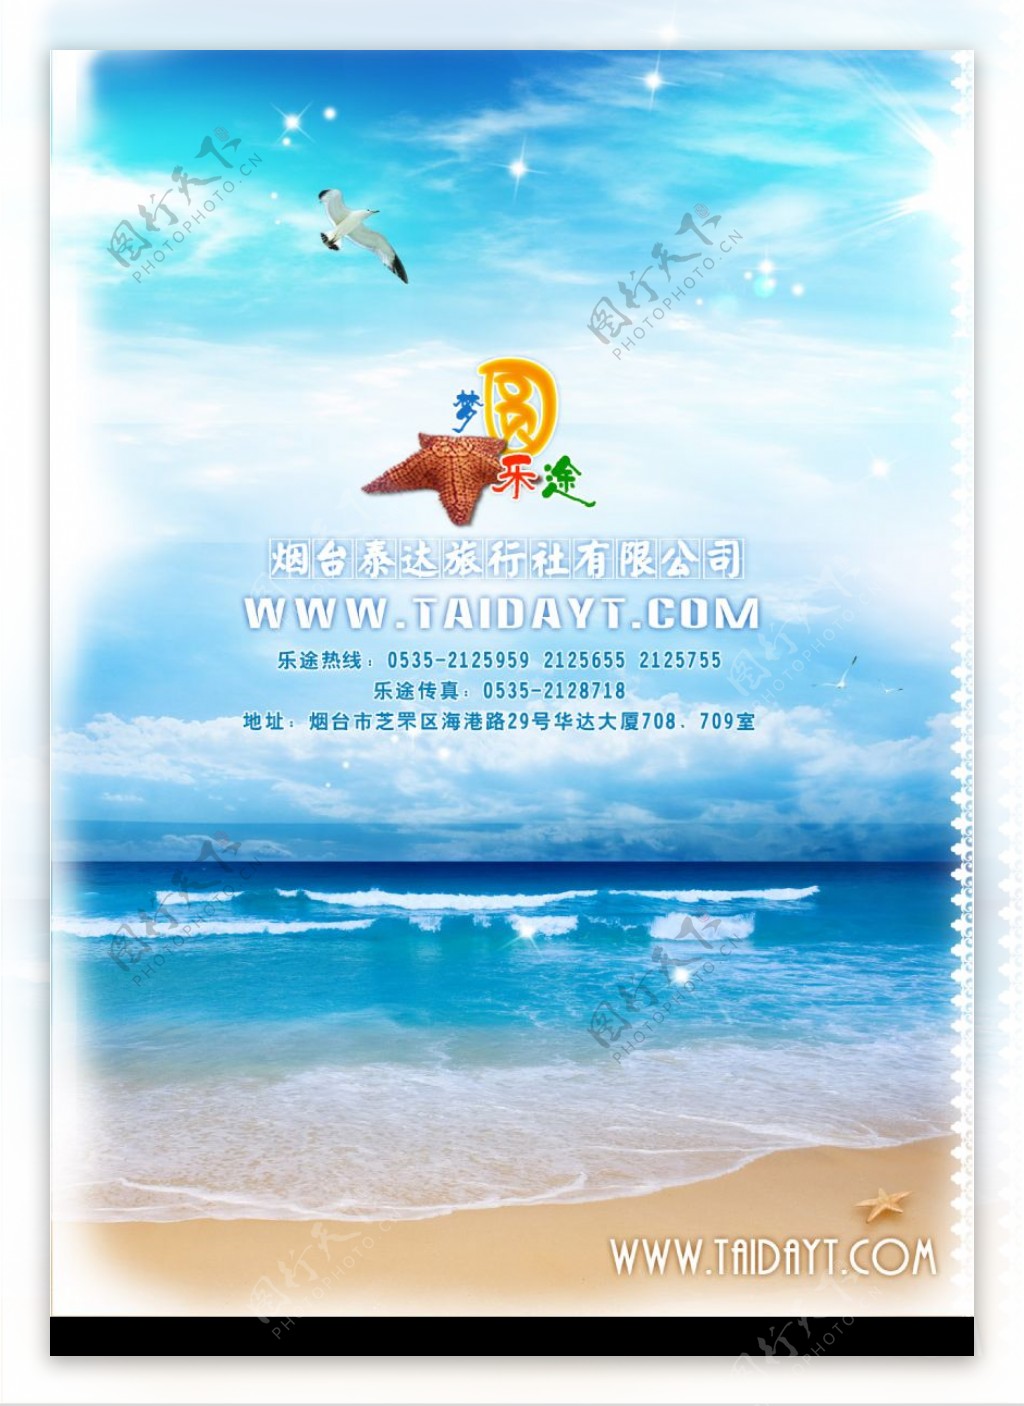 旅行社宣传页背面大海蓝天海星图片